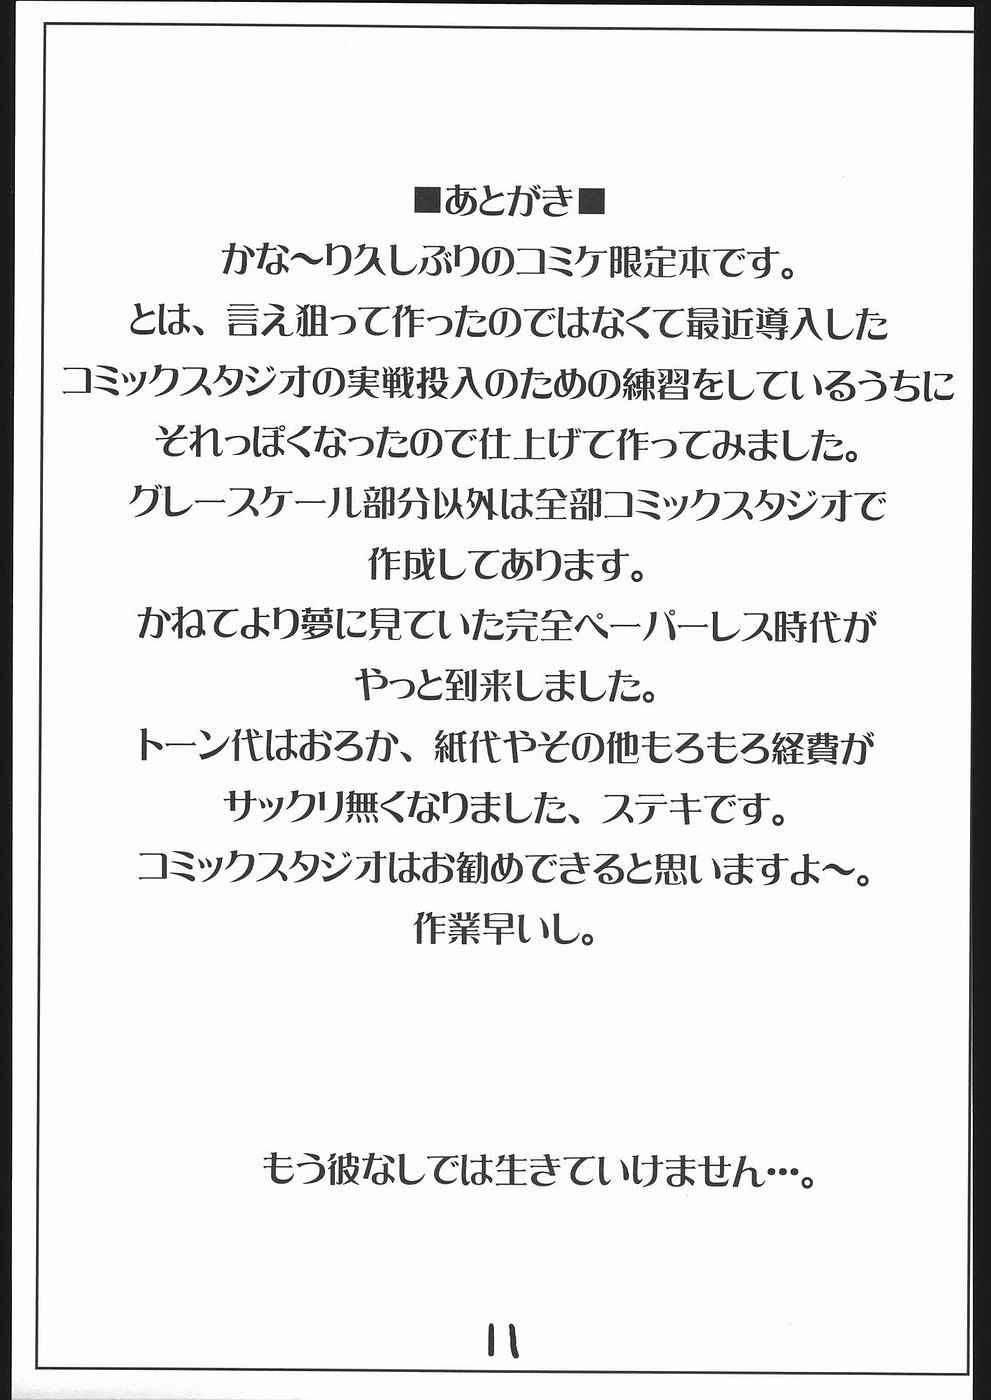 Amigos Ninpou Ranchiki Sawagi! - 2x2 shinobuden Mamada - Page 12